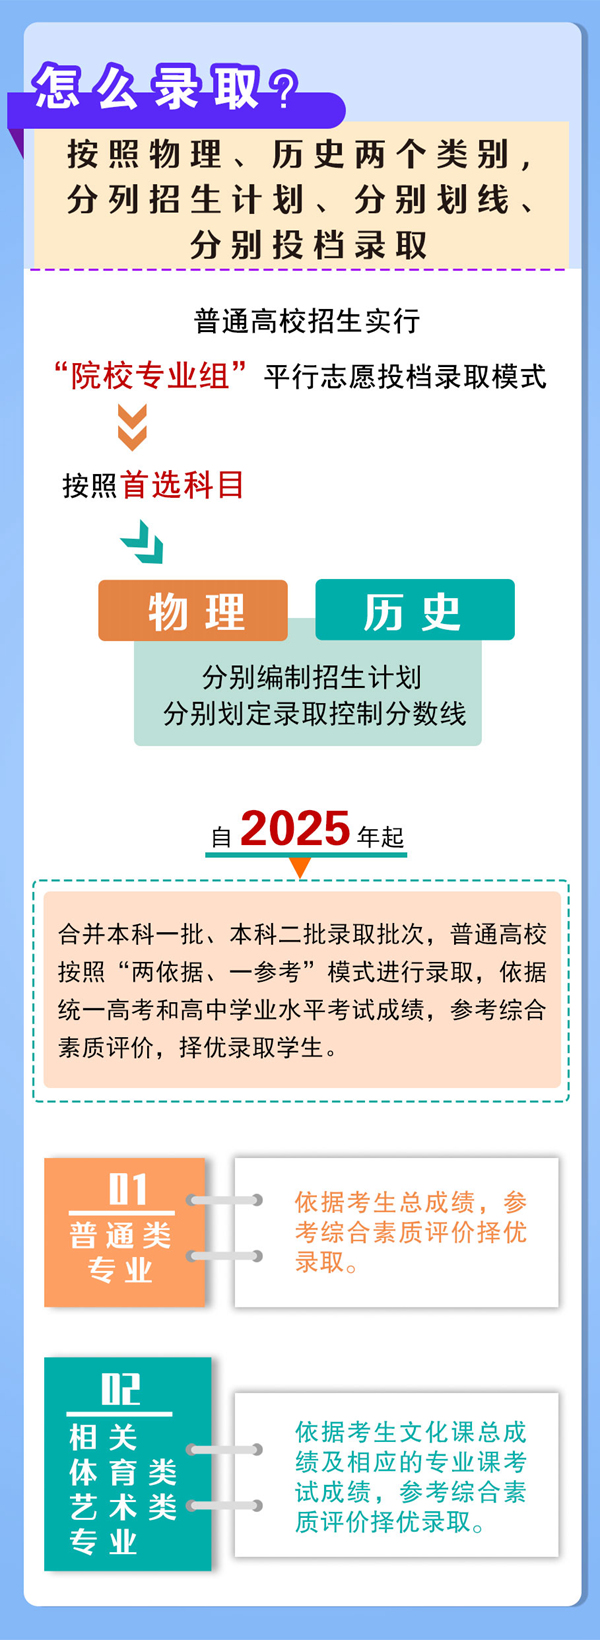 河南启动高考综合改革 2022年秋季入学普通高一学生开始取消文理分科